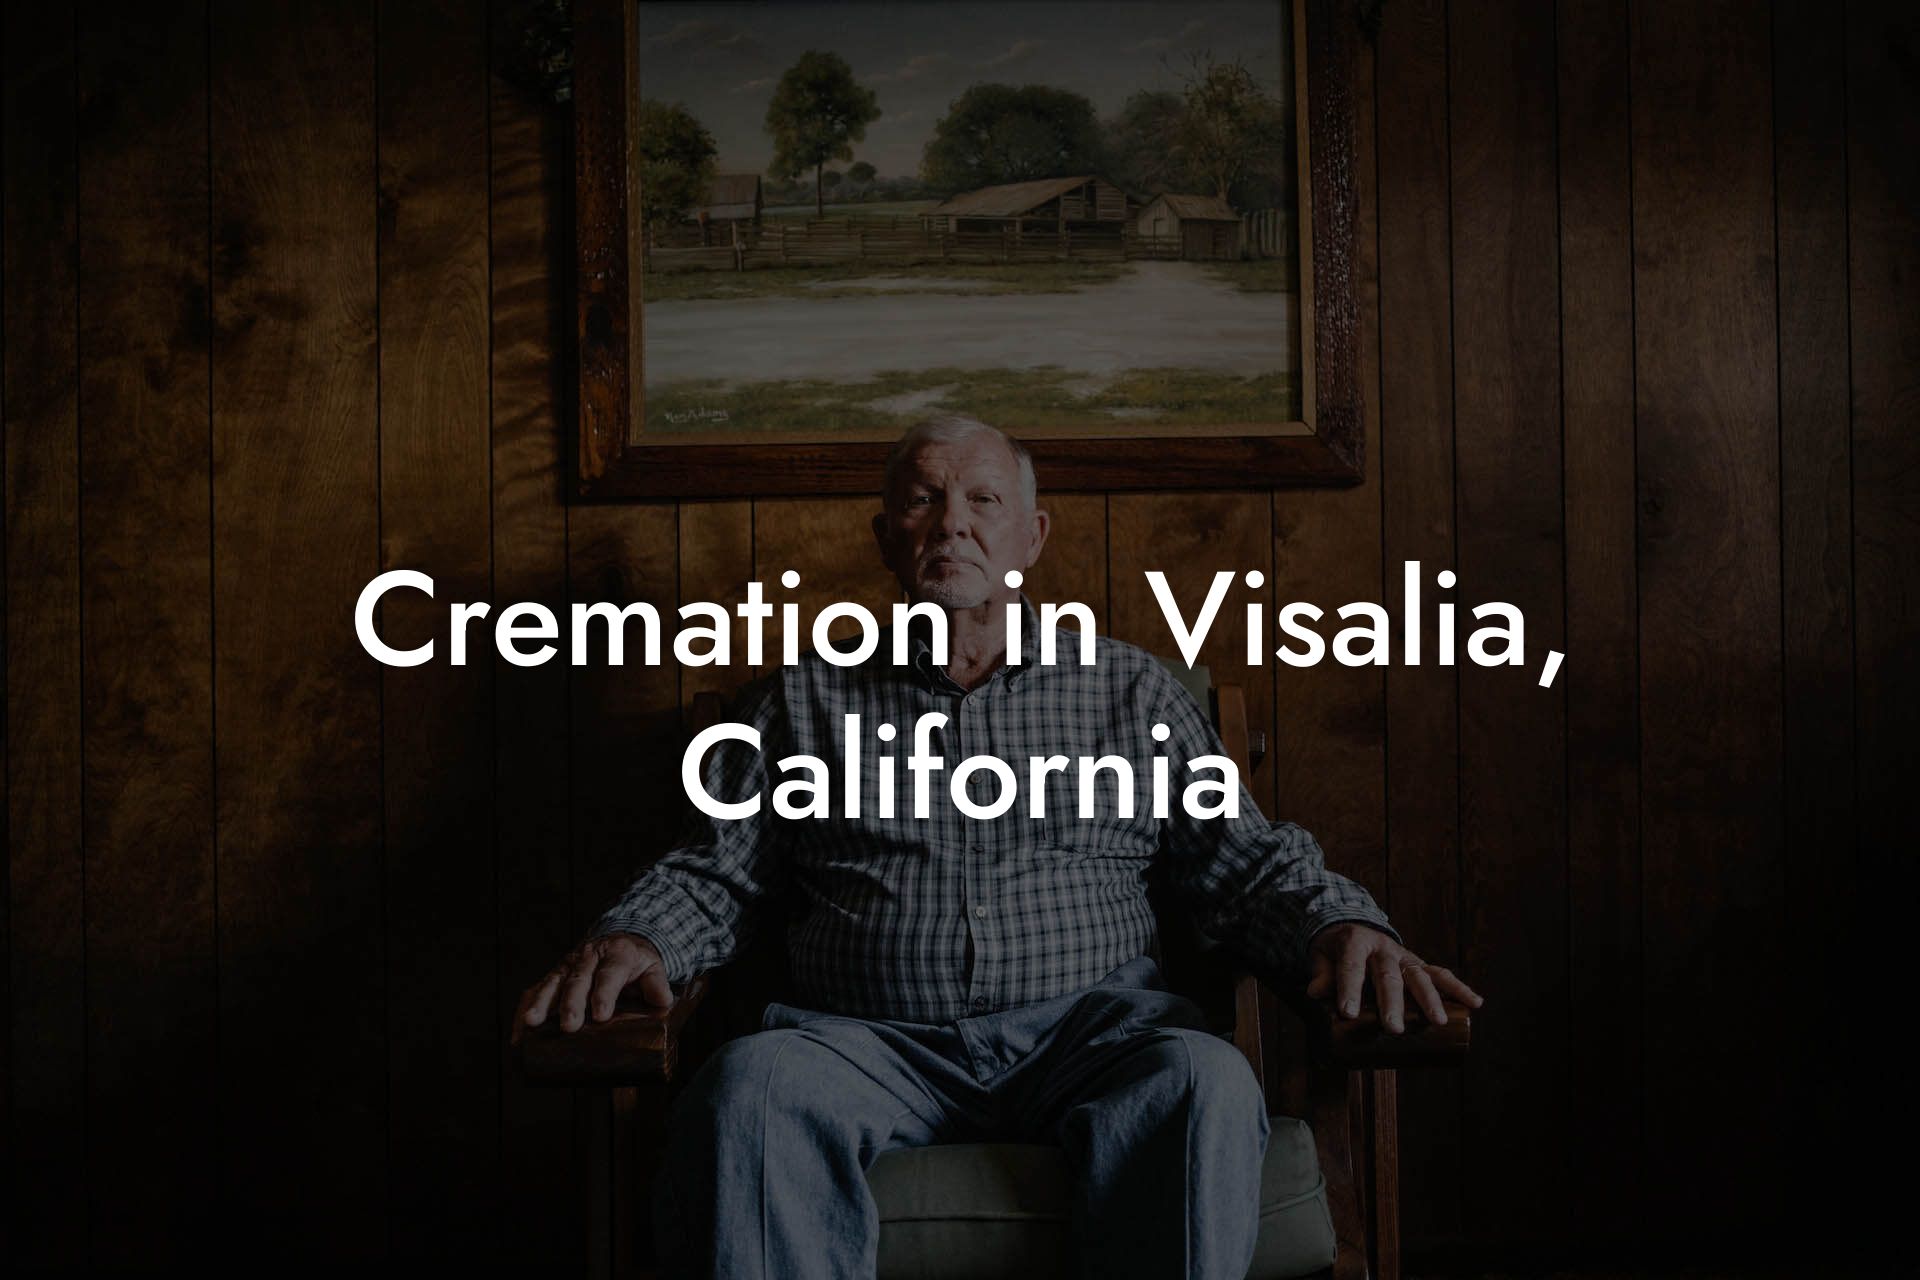 Cremation in Visalia, California